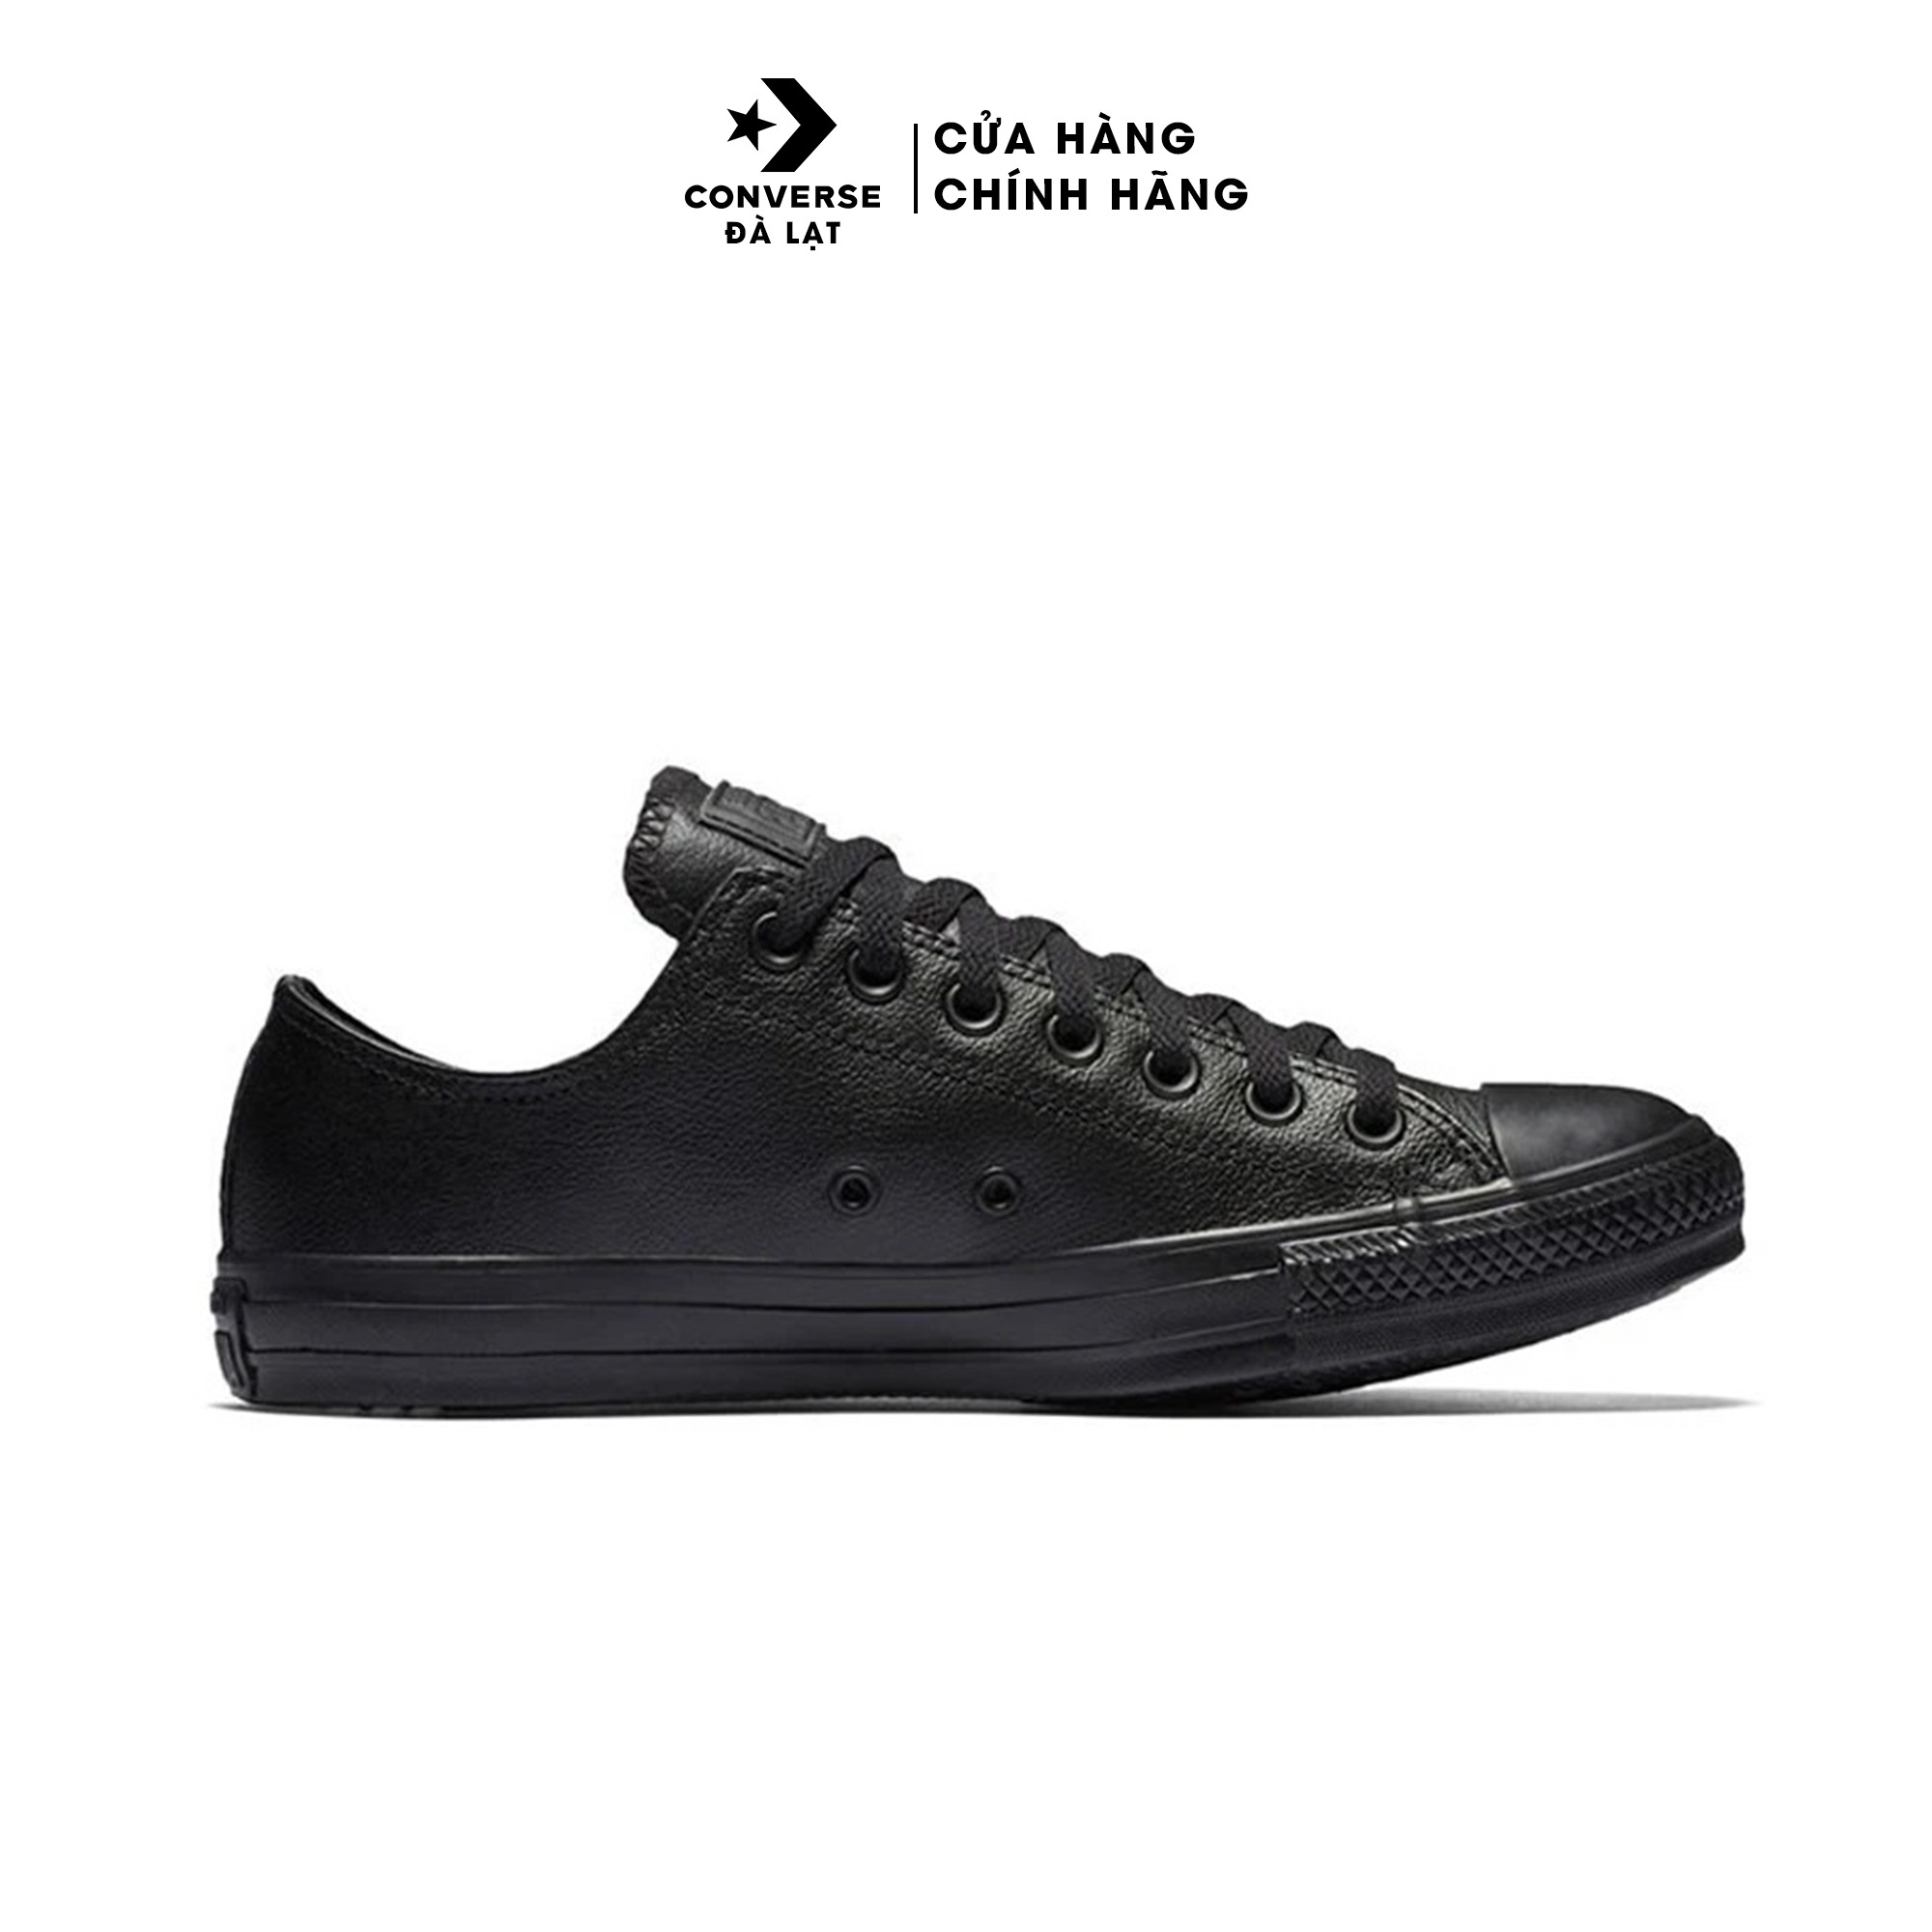 Giày Converse thời trang full đen Chuck Taylor All Star Classic - 135253